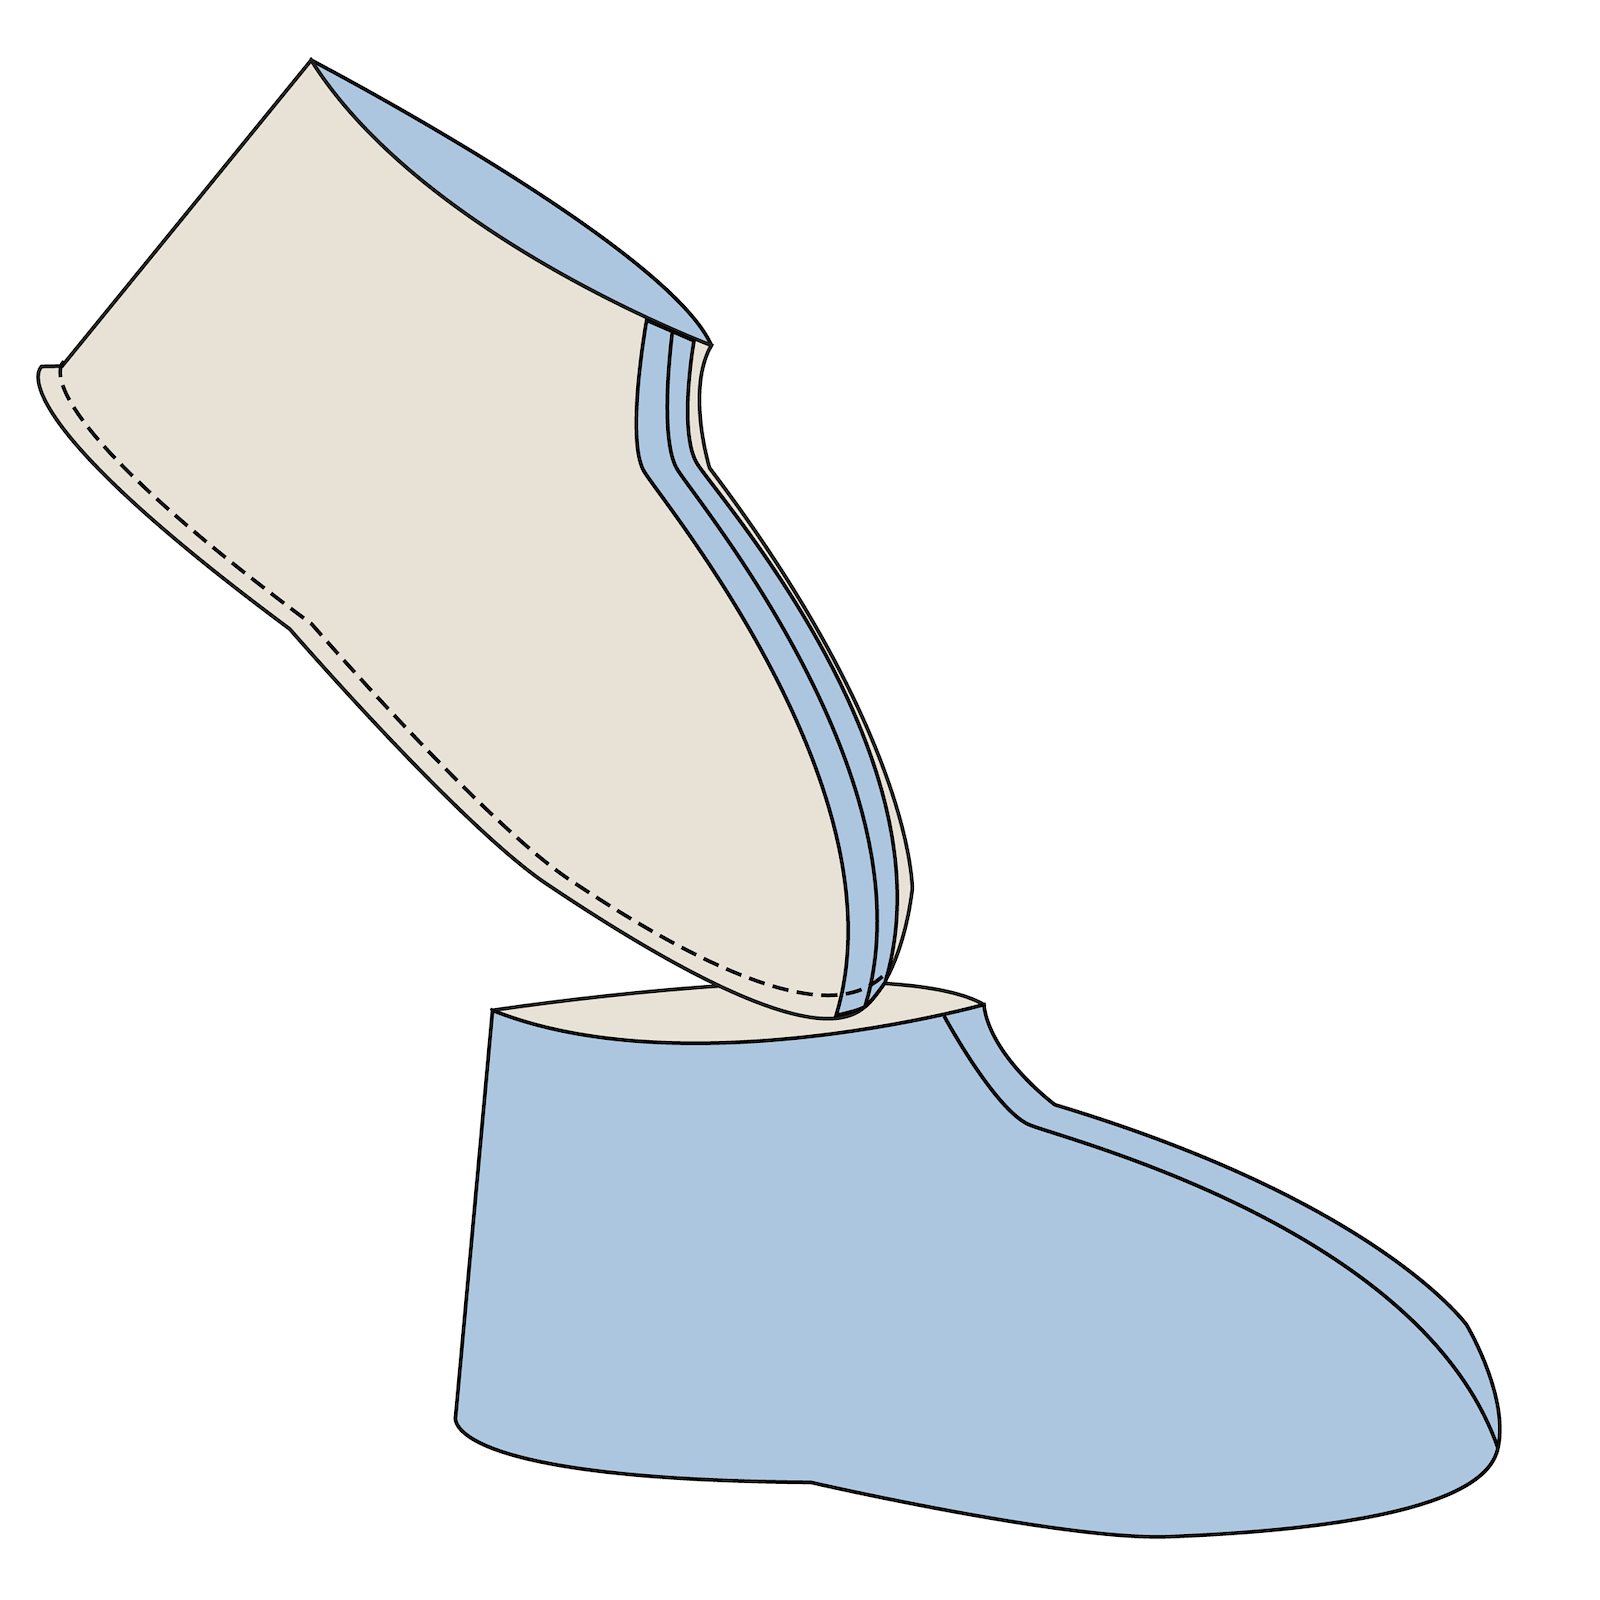 Sewing pattern: Chrildrens Slippers DIY2009_step5.jpg